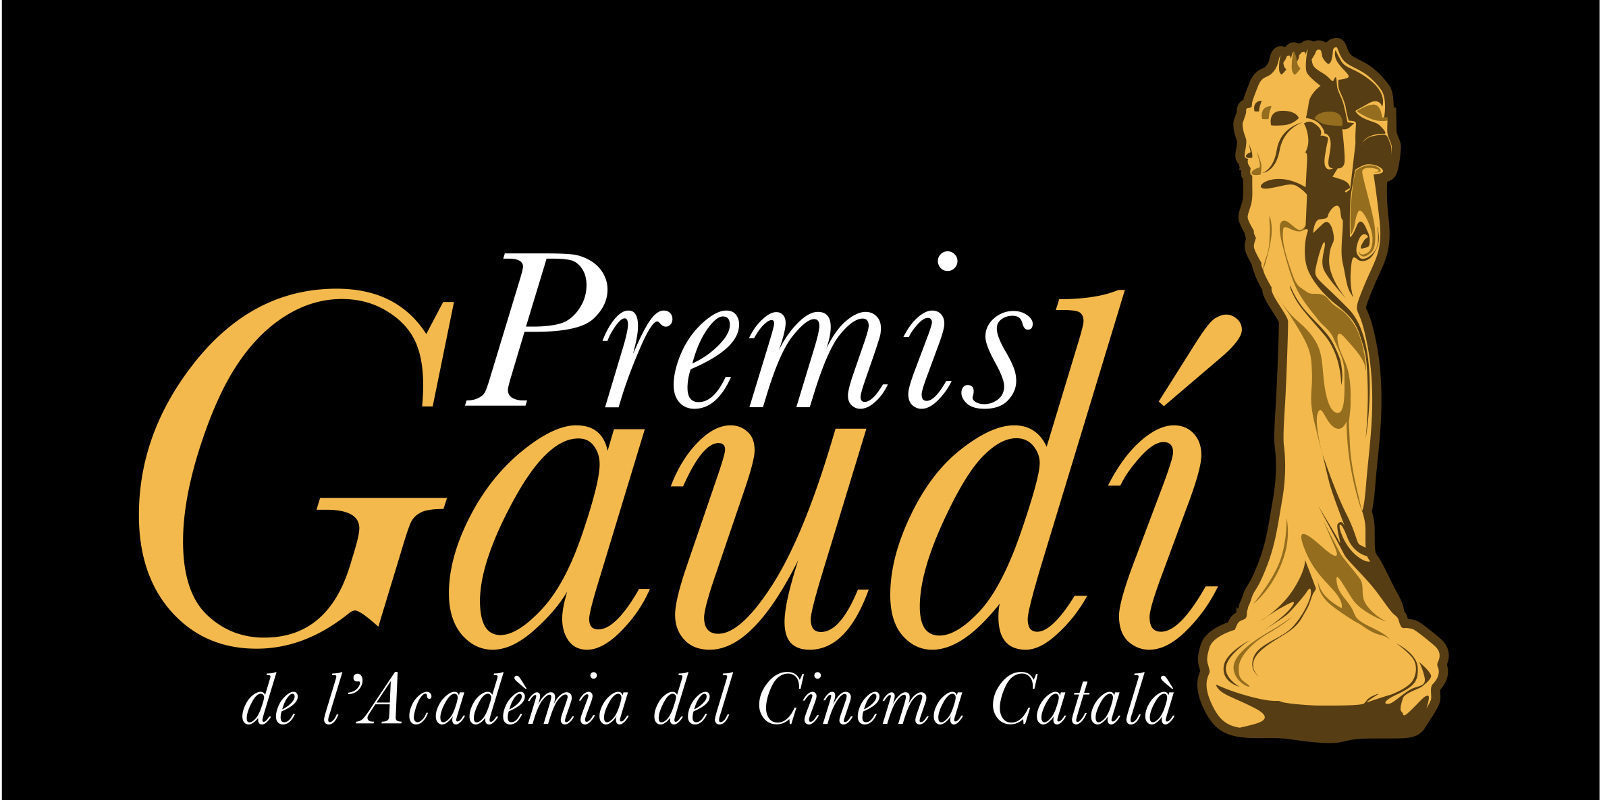 'Verano 1993', vuelve a triunfar, esta vez en los Premios Gaudí